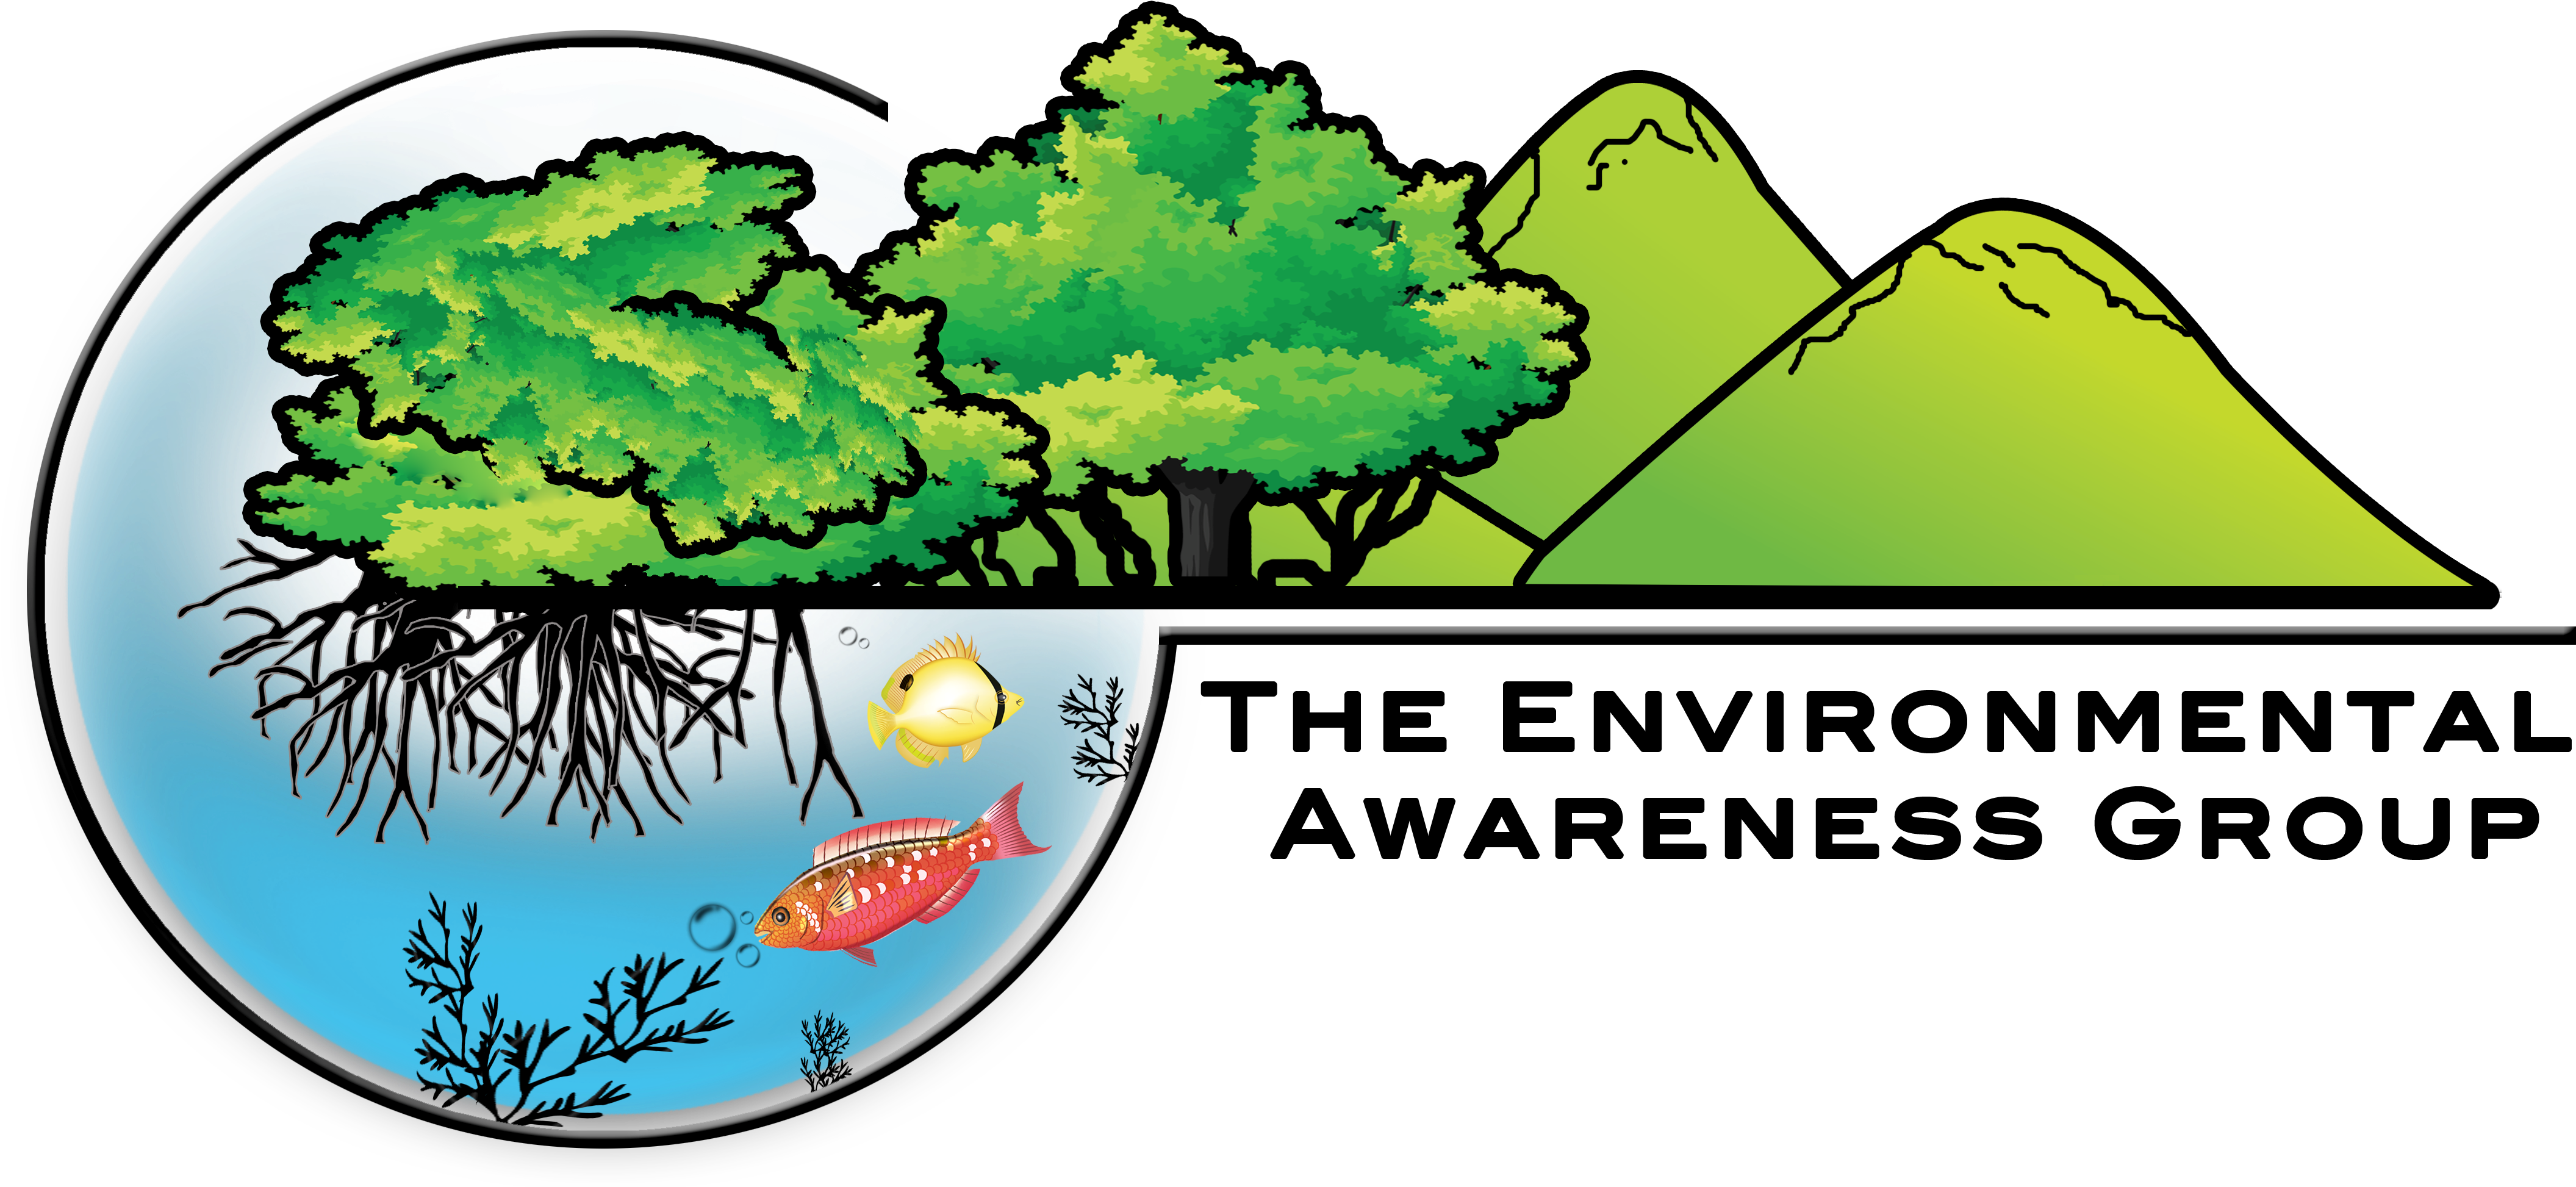 Eag Logo - Logo About Environmental Awareness (4308x1993)